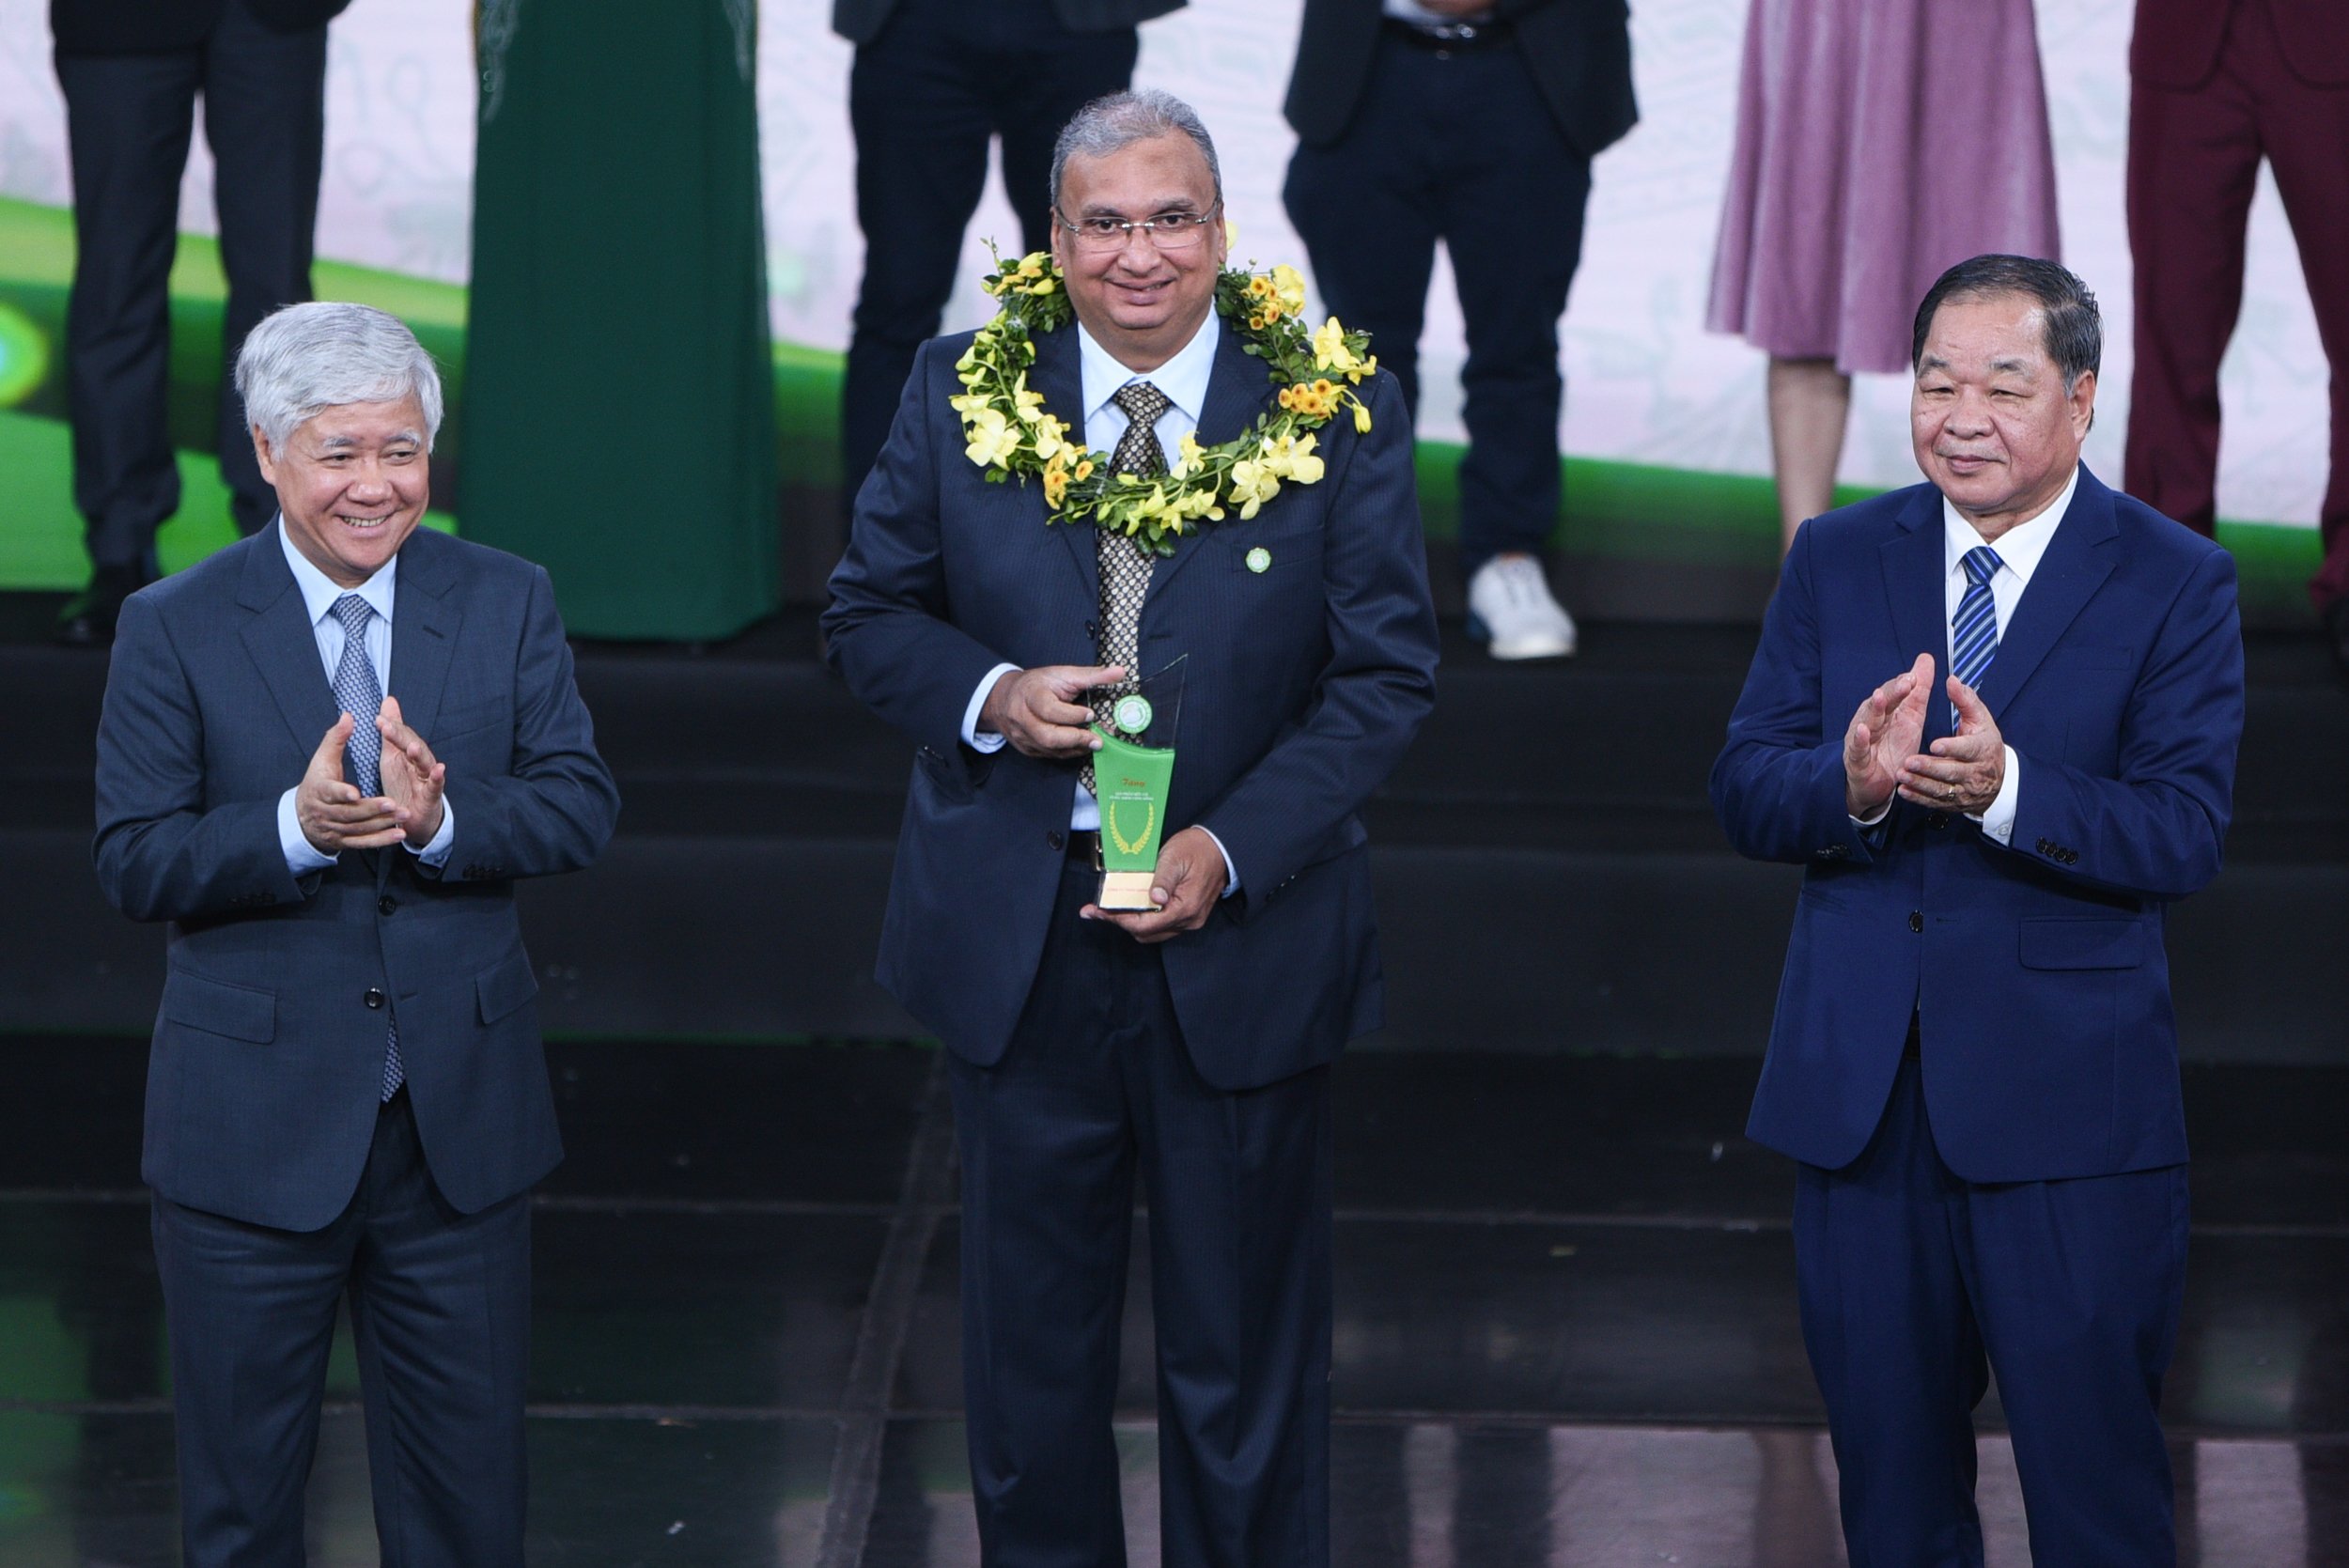 Ông Vijay Kumar Pandey, đại diện Tập đoàn TH, nhận cúp vàng Sản phẩm hữu cơ vì sức khỏe cộng đồng cho sản phẩm, thương hiệu sữa tươi organic của TH. (Ảnh: Hóa Mạc).